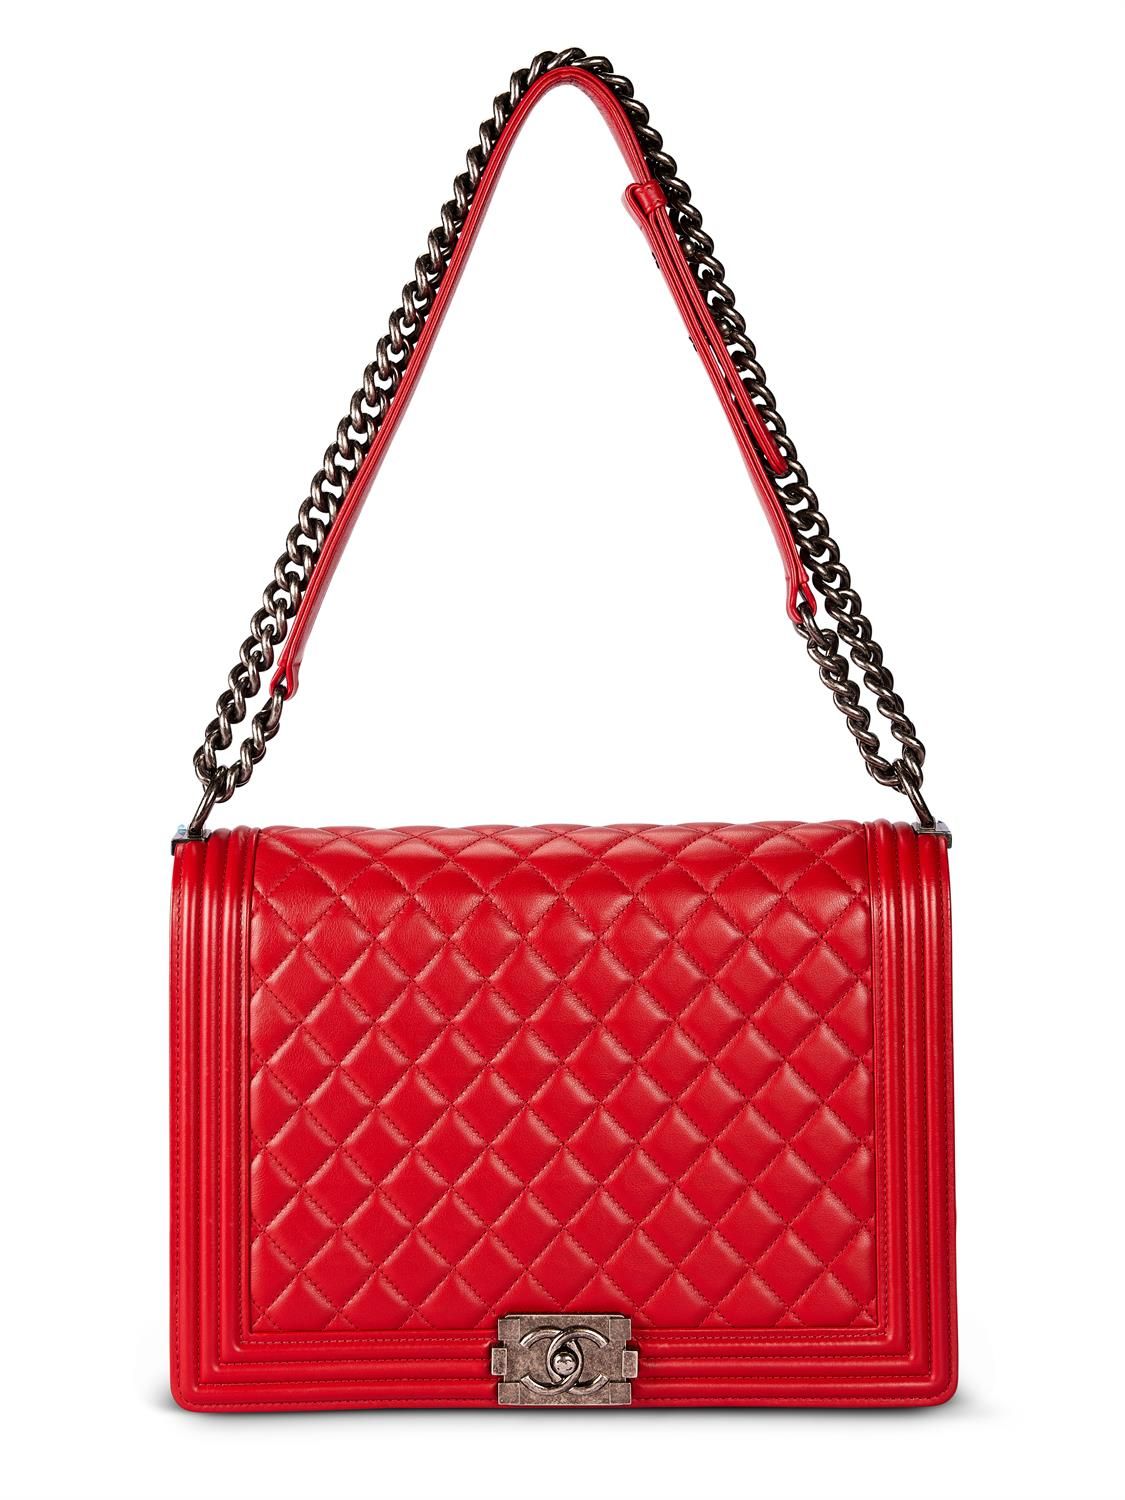 Chanel, Boy, a red calfskin quilted leather shoulder bag 香奈儿，男孩，红色小牛皮绗缝皮革肩包，约201&hellip;